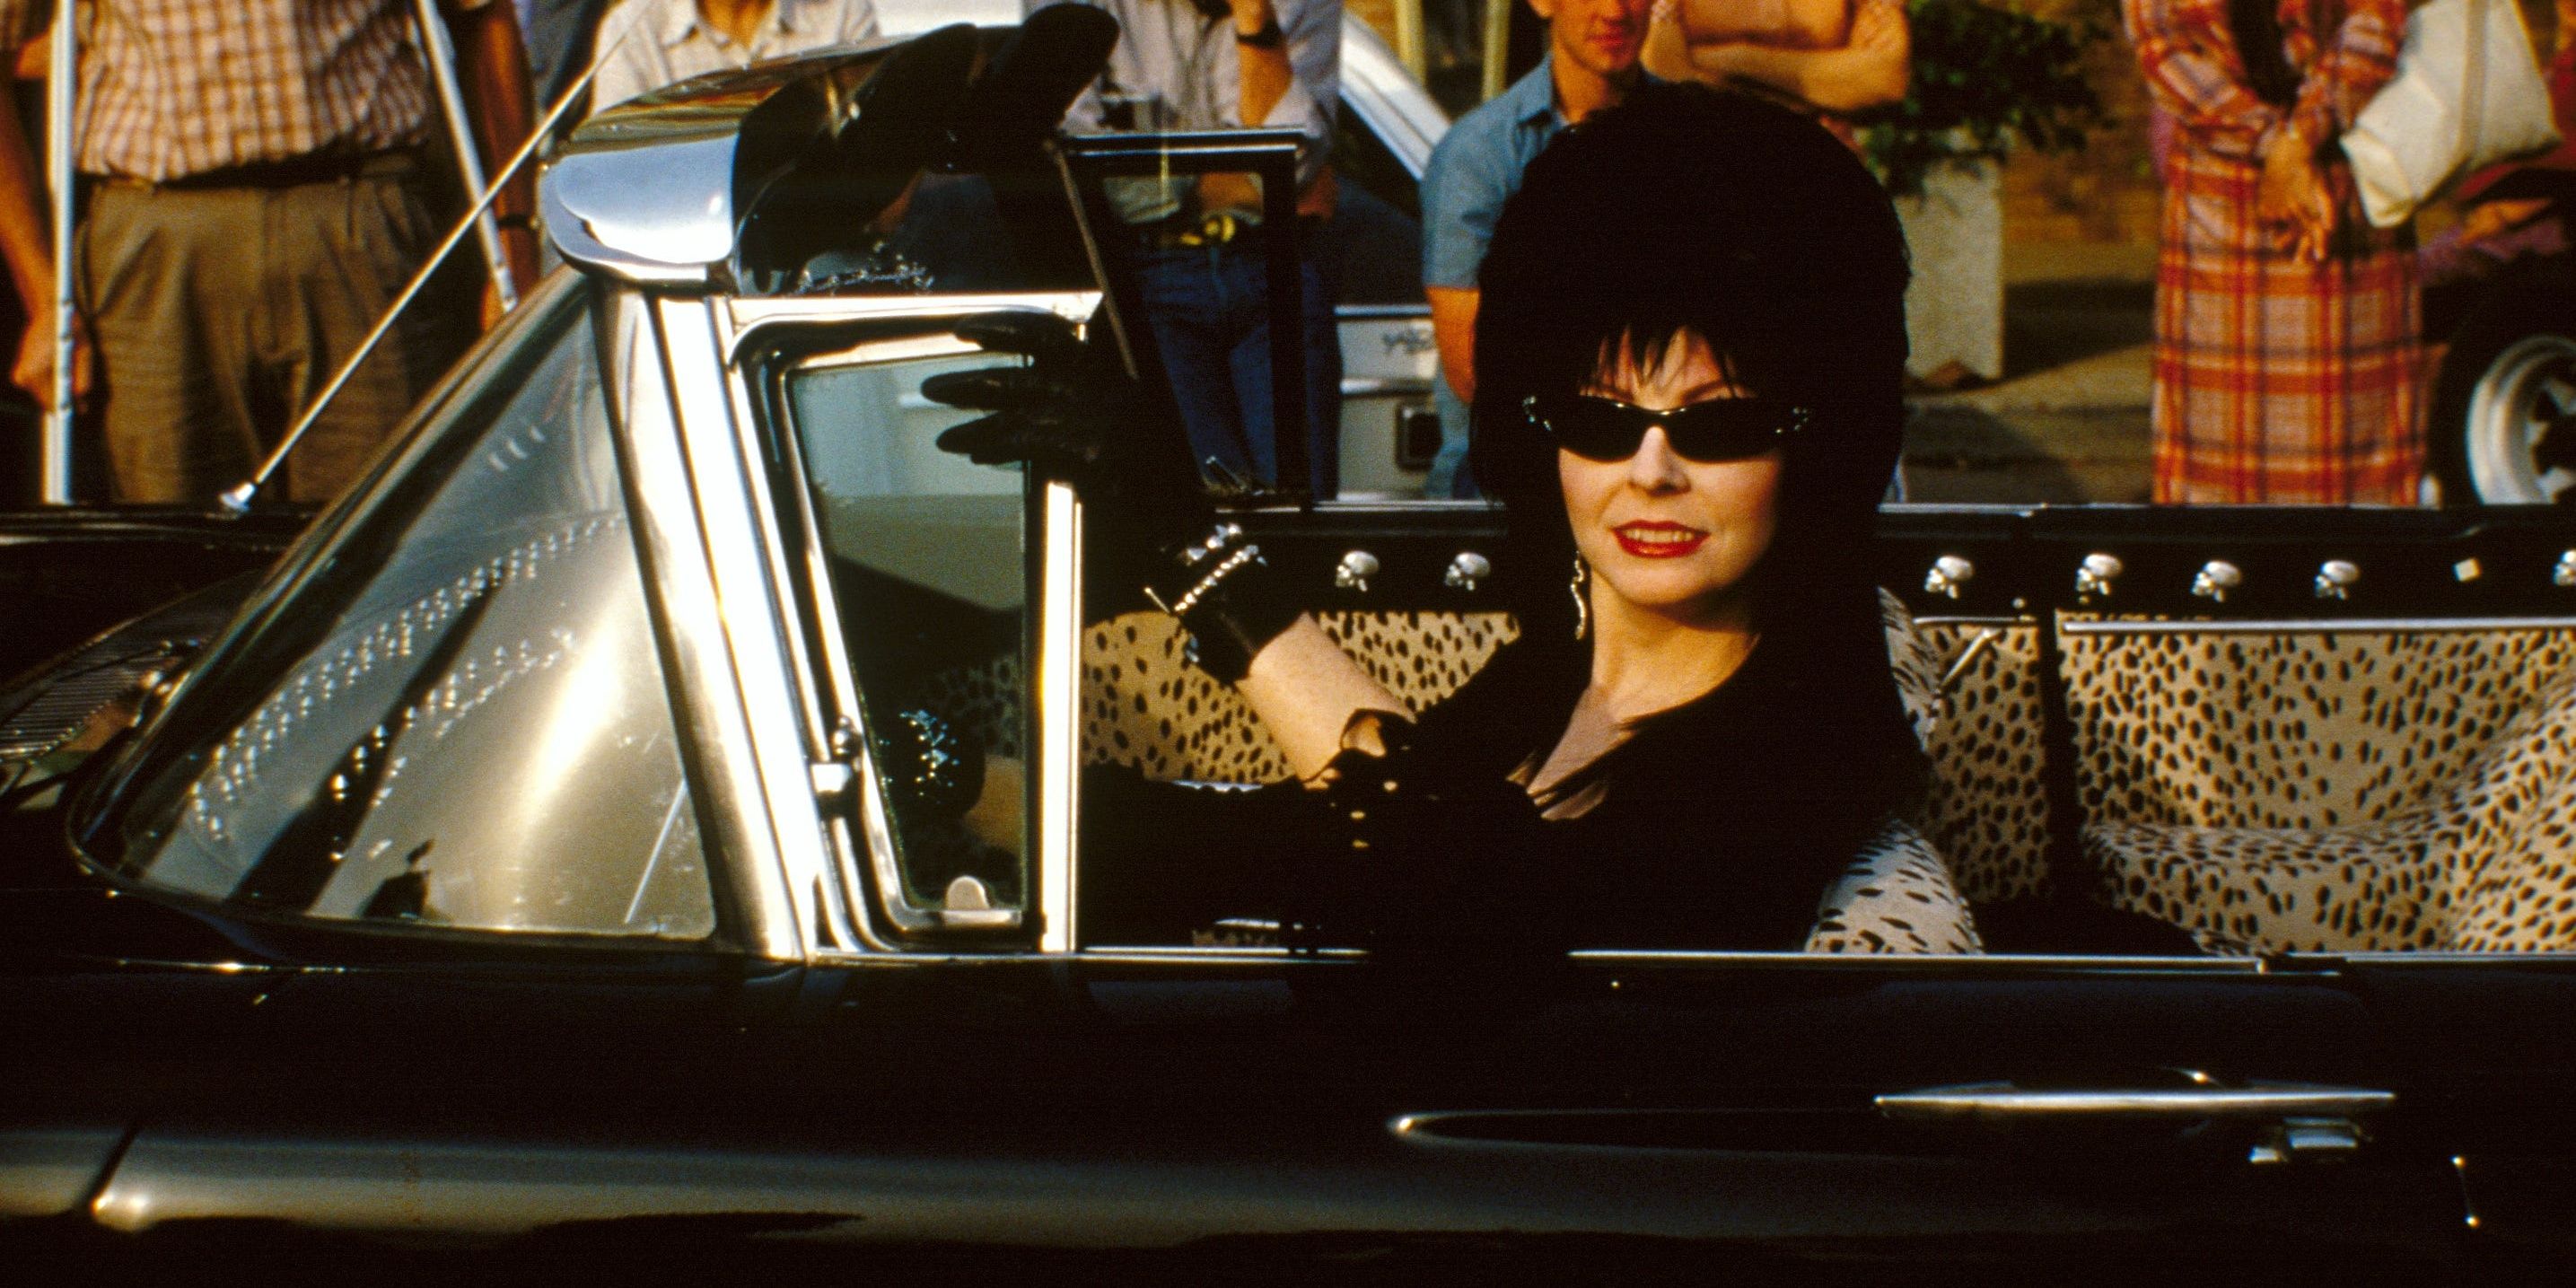 Wie is Elvira en waarom is ze zo belangrijk?